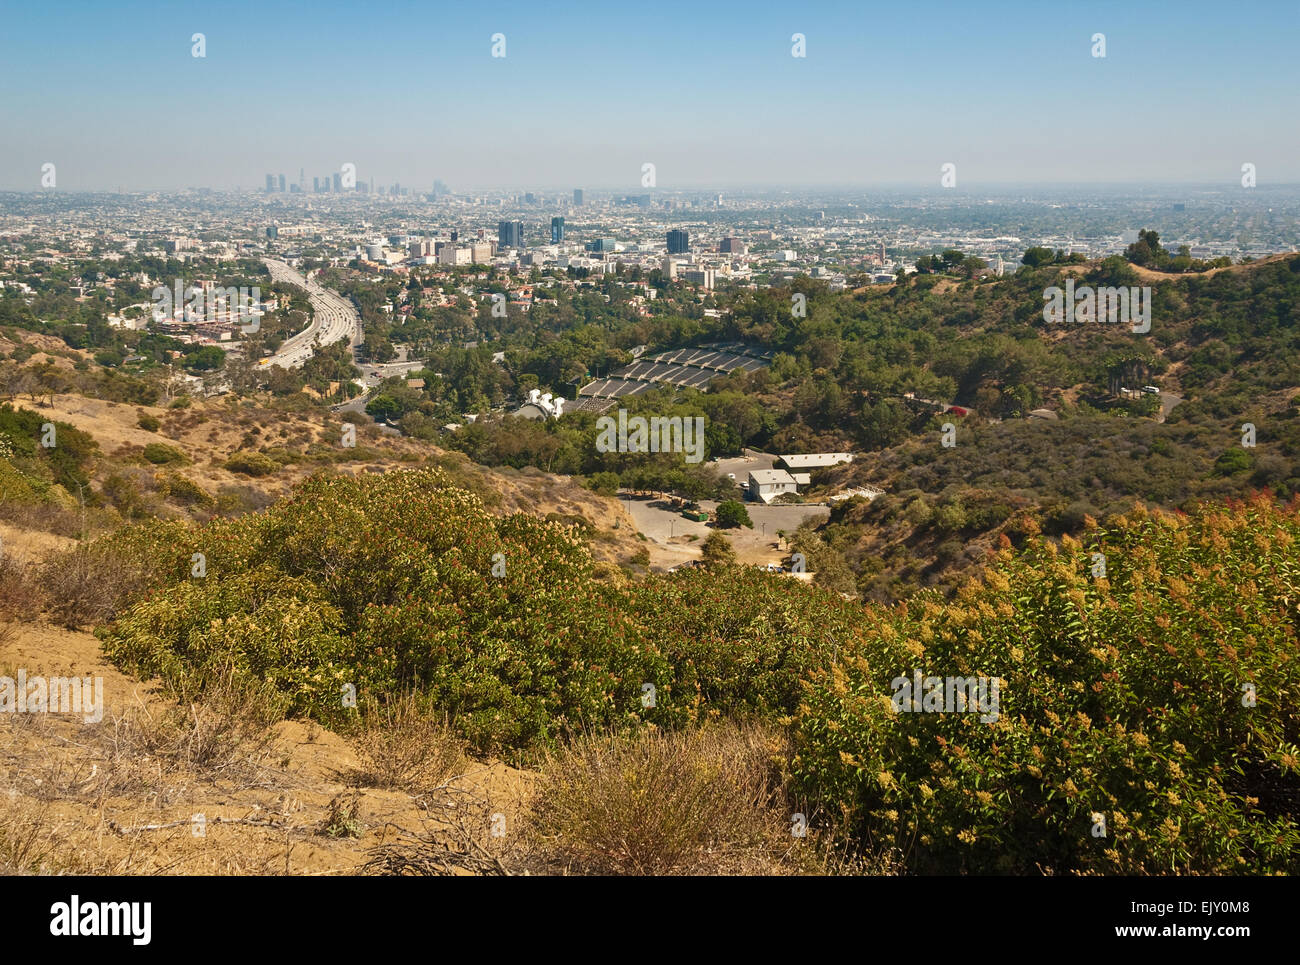 Los Angeles skyline, vu de l'Hollywood Bowl surplombent sur Mulholland Drive dans les collines de Californie du Sud. Banque D'Images